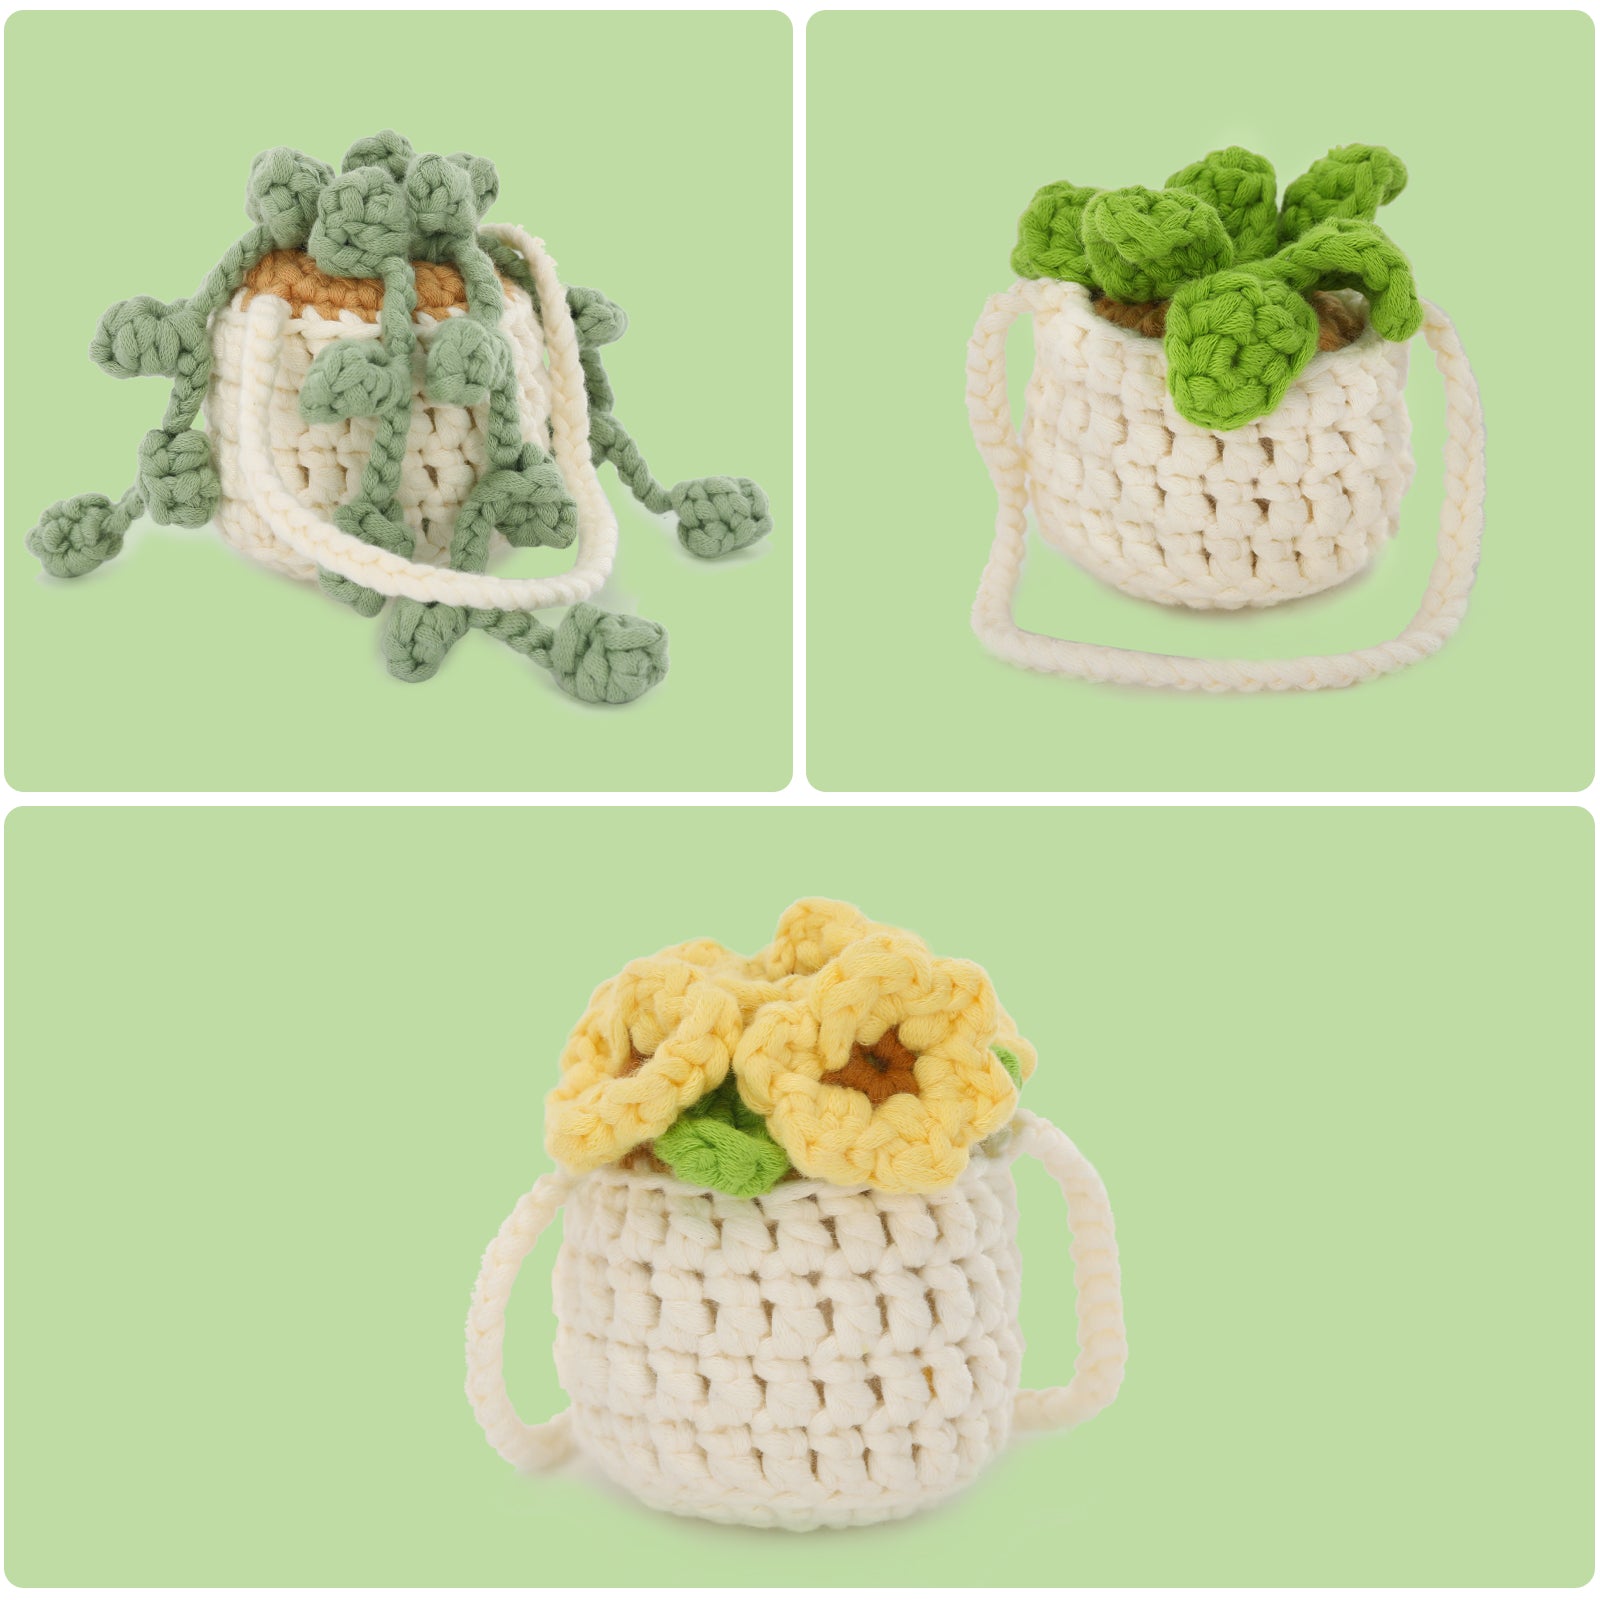 Cuteeeshop Kawaii Crochet Cactus Starter Kits with Easy Peasy Yarn Easy  Crochet Yarn Plants DIY Crochet